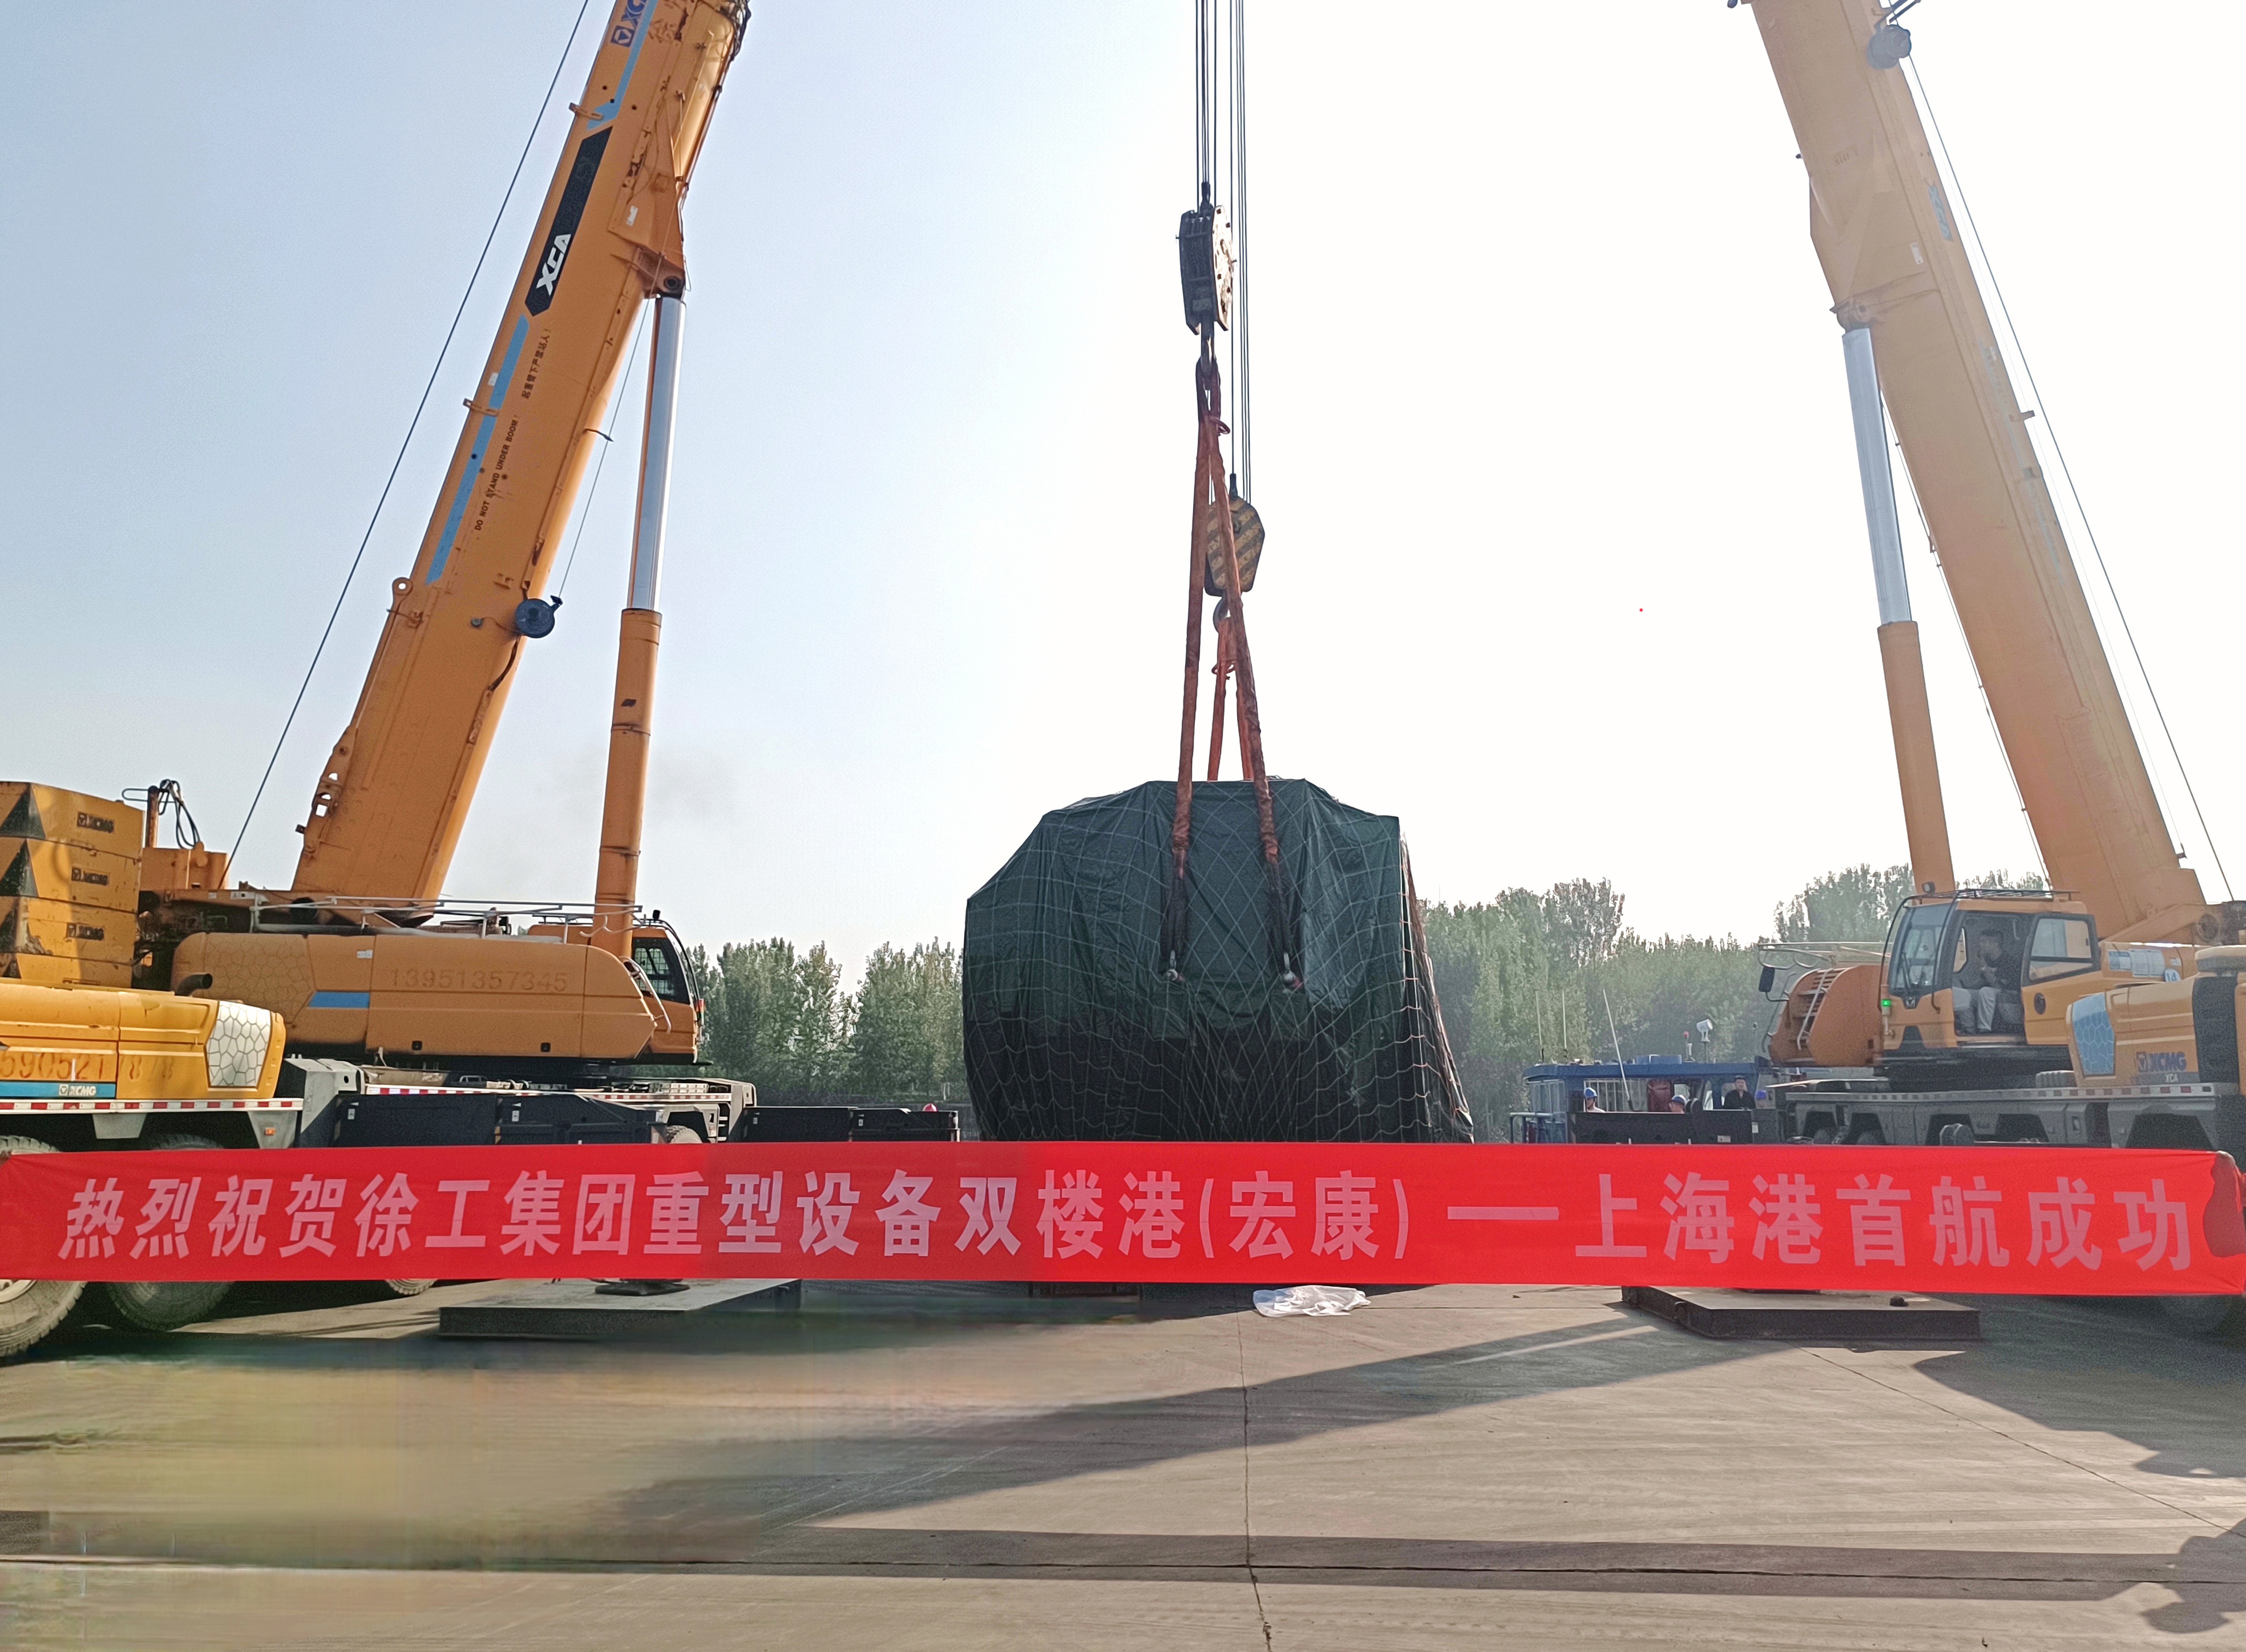 徐港集团完成首单大件装备集港转运外洋营业